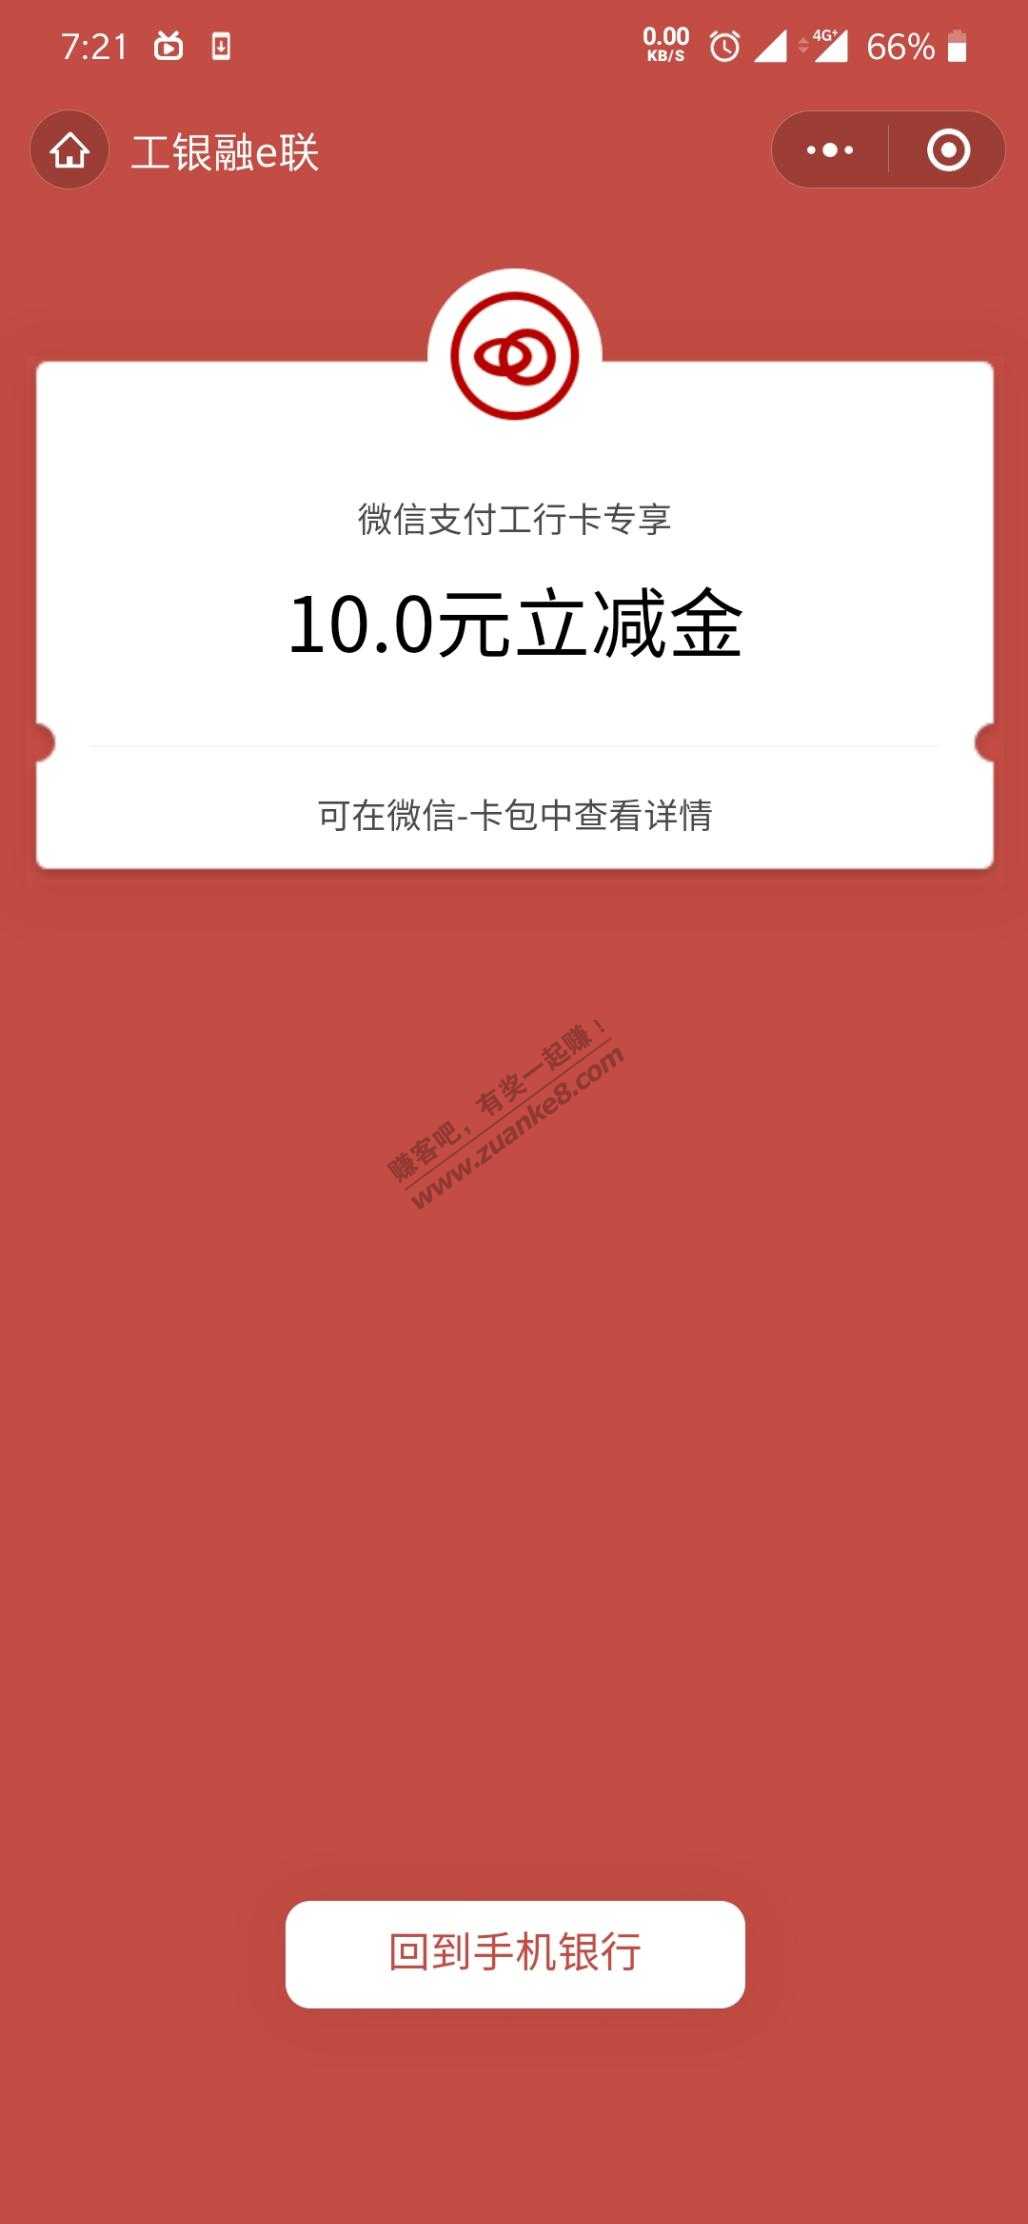 工商银行登录弹窗军人卡微信-10-惠小助(52huixz.com)